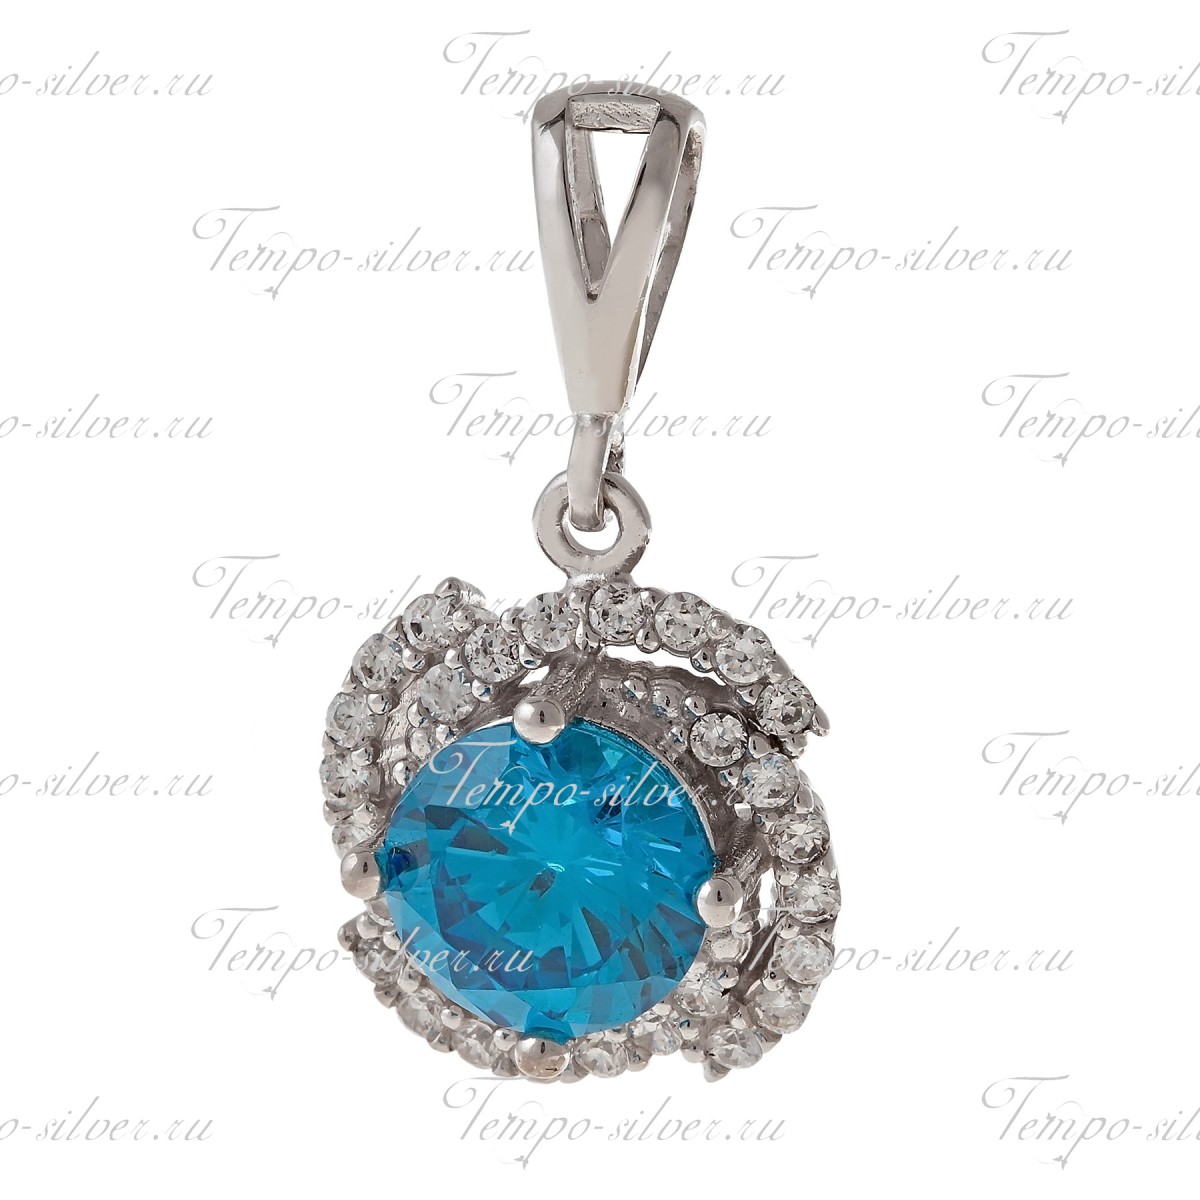 Подвеска из серебра с крупным голубым камнем в центре цветка из камней цена